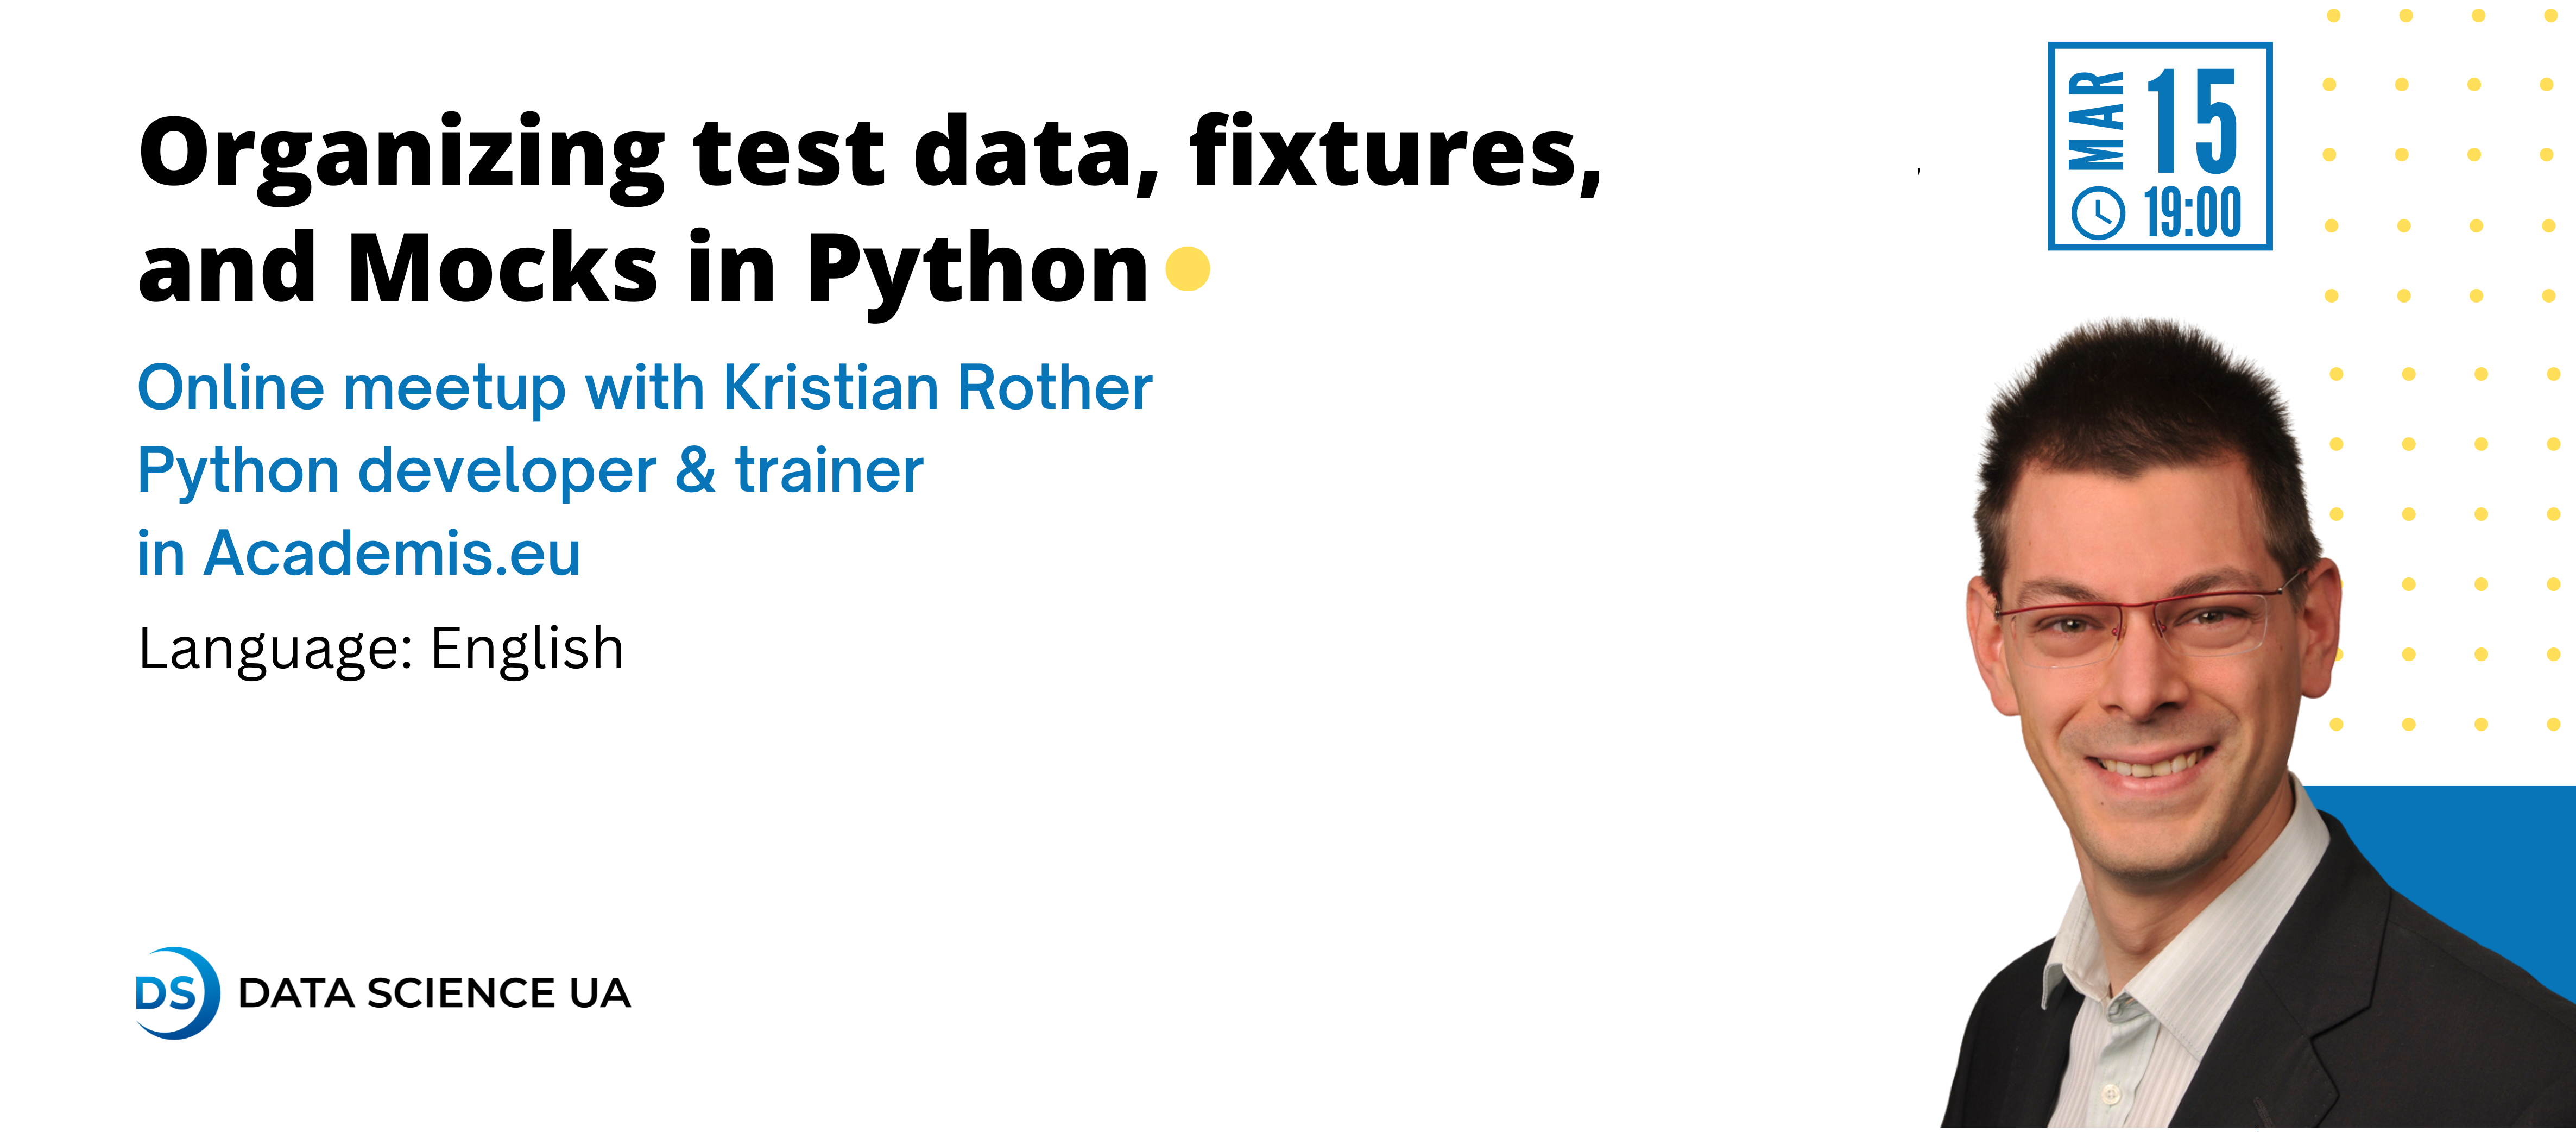 Организация тестовых данных, фикстур и макетов в Python